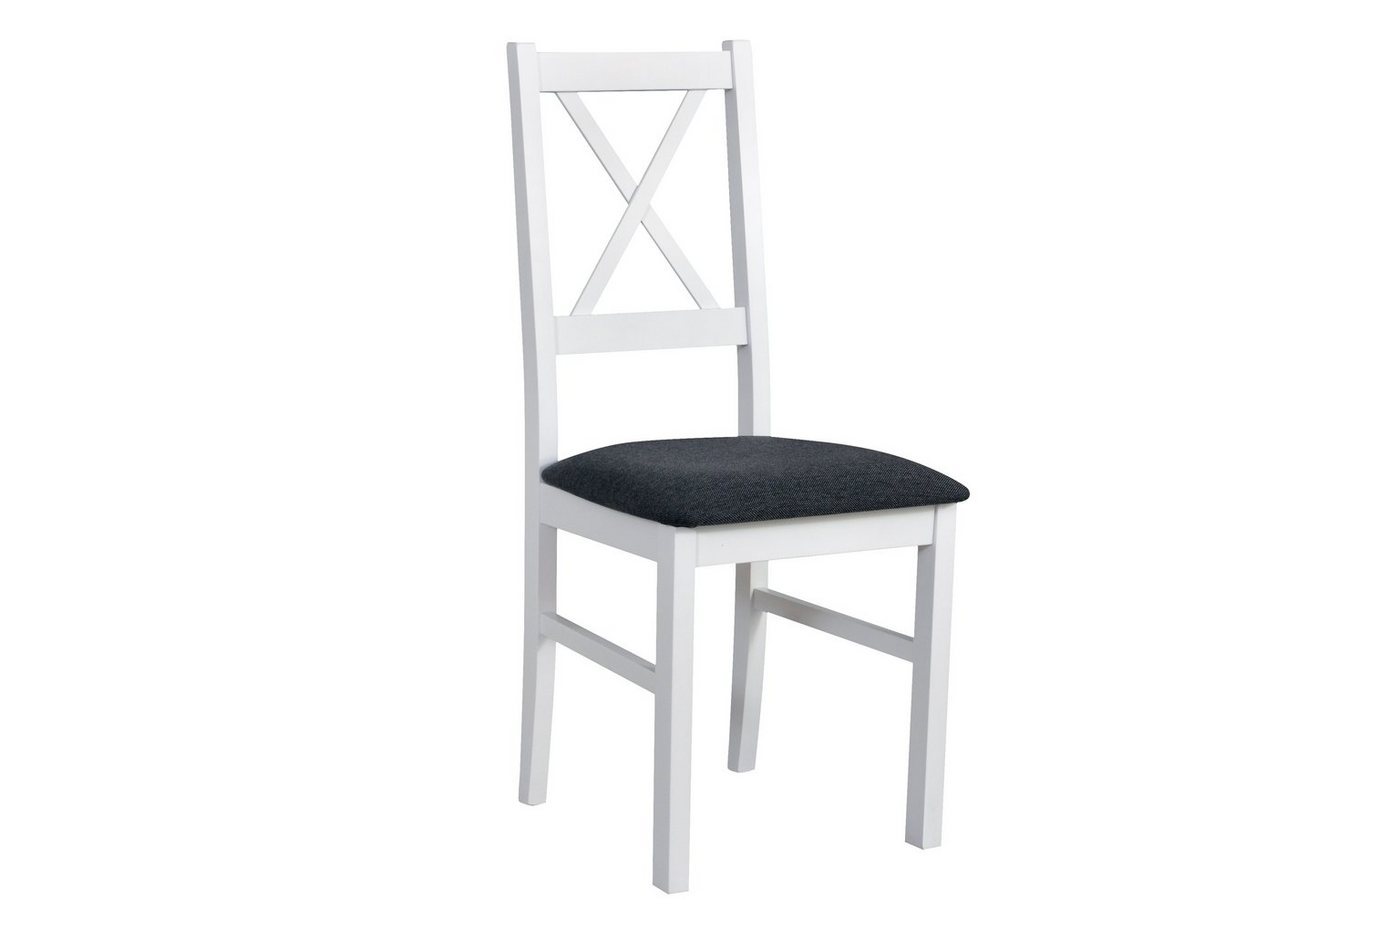 Beautysofa Esszimmerstuhl Stuhl Nilo X (2 Stk. pro Satz) aus Holz mit gepolstertem Sitz (4 St), Beine in: Buche, Sonoma, Stirling, Nussbaum, Schwarz und Weiß von Beautysofa